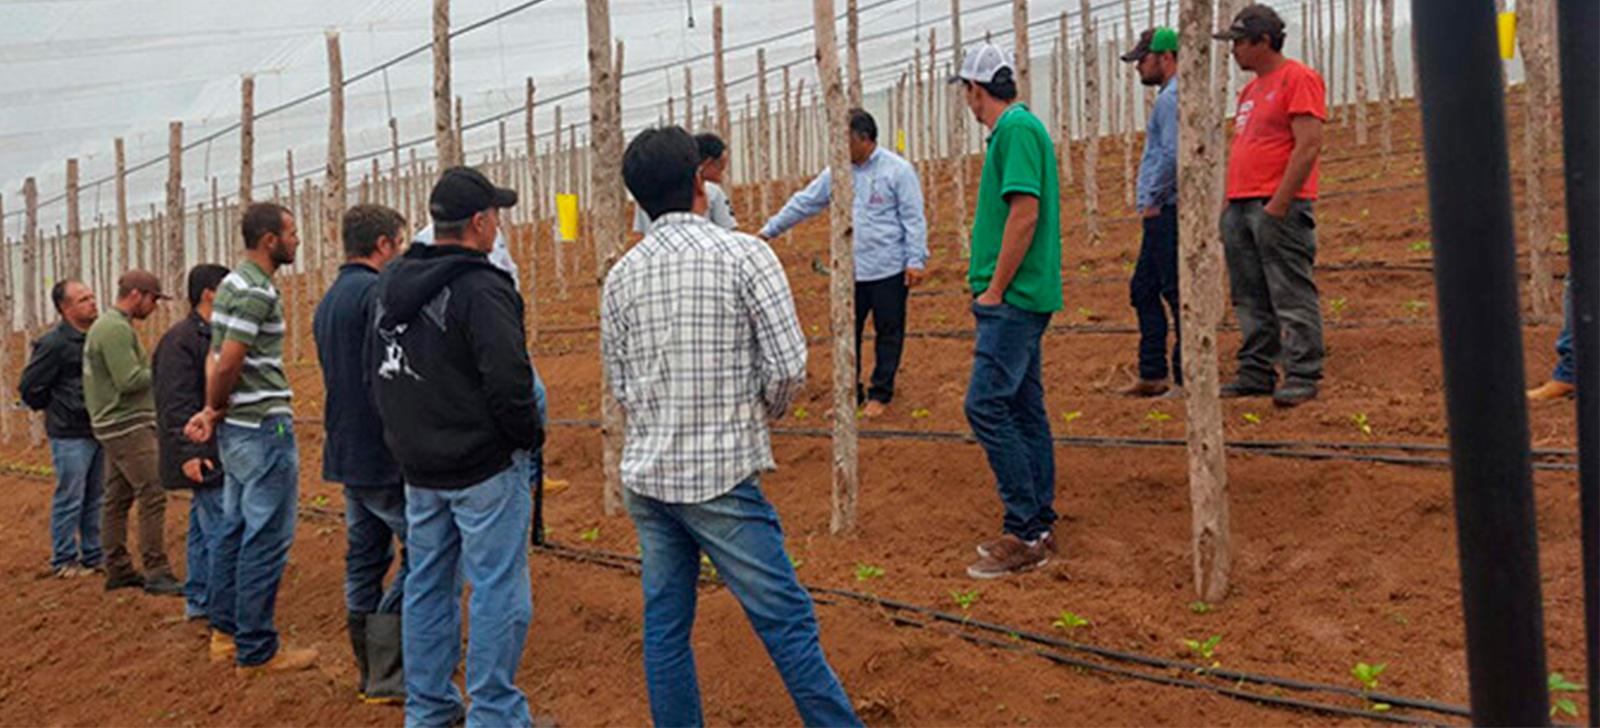 promip manejo integrado de pragas controle biologico caminhos para uma agricultura mais sustentavel e segura (1)